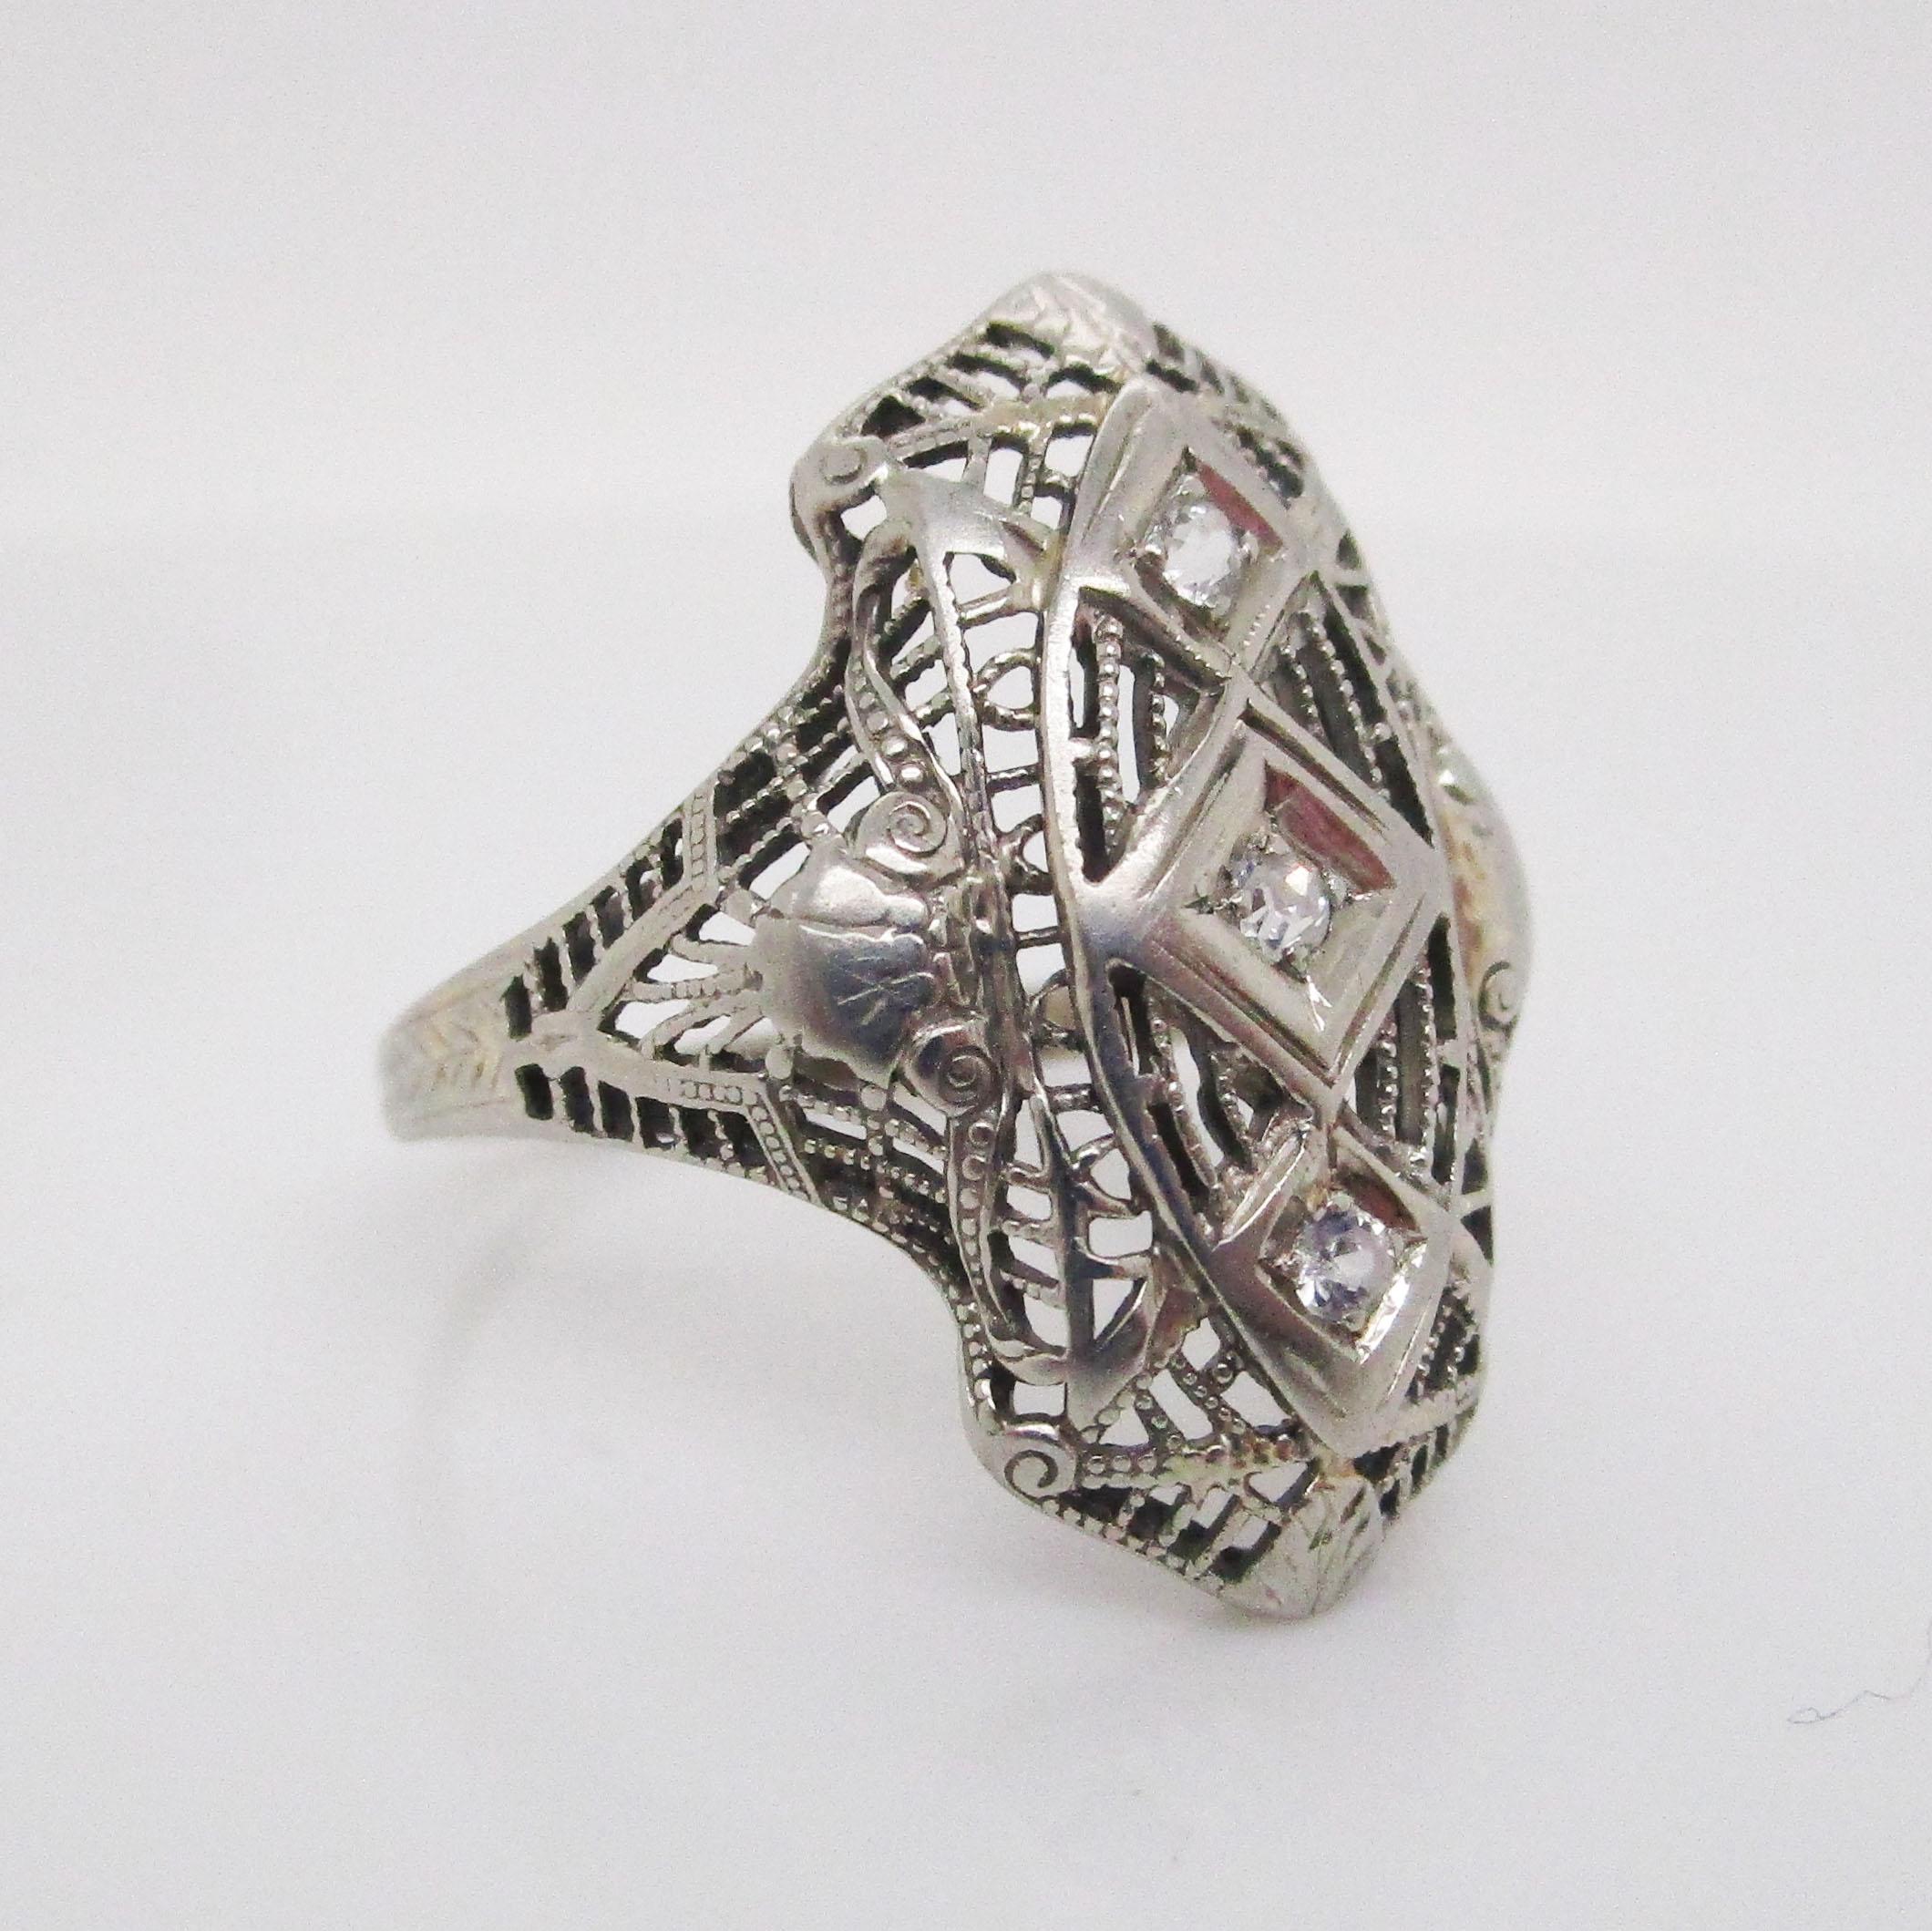 Dieser definitive Art-Déco-Ring aus dem Jahr 1925 vereint glänzendes 18-karätiges Weißgold und strahlend weiße Diamanten zu einem bemerkenswert bezaubernden Stück tragbarer Kunst! Der Ring zeichnet sich durch eine wunderschöne lange, lineare